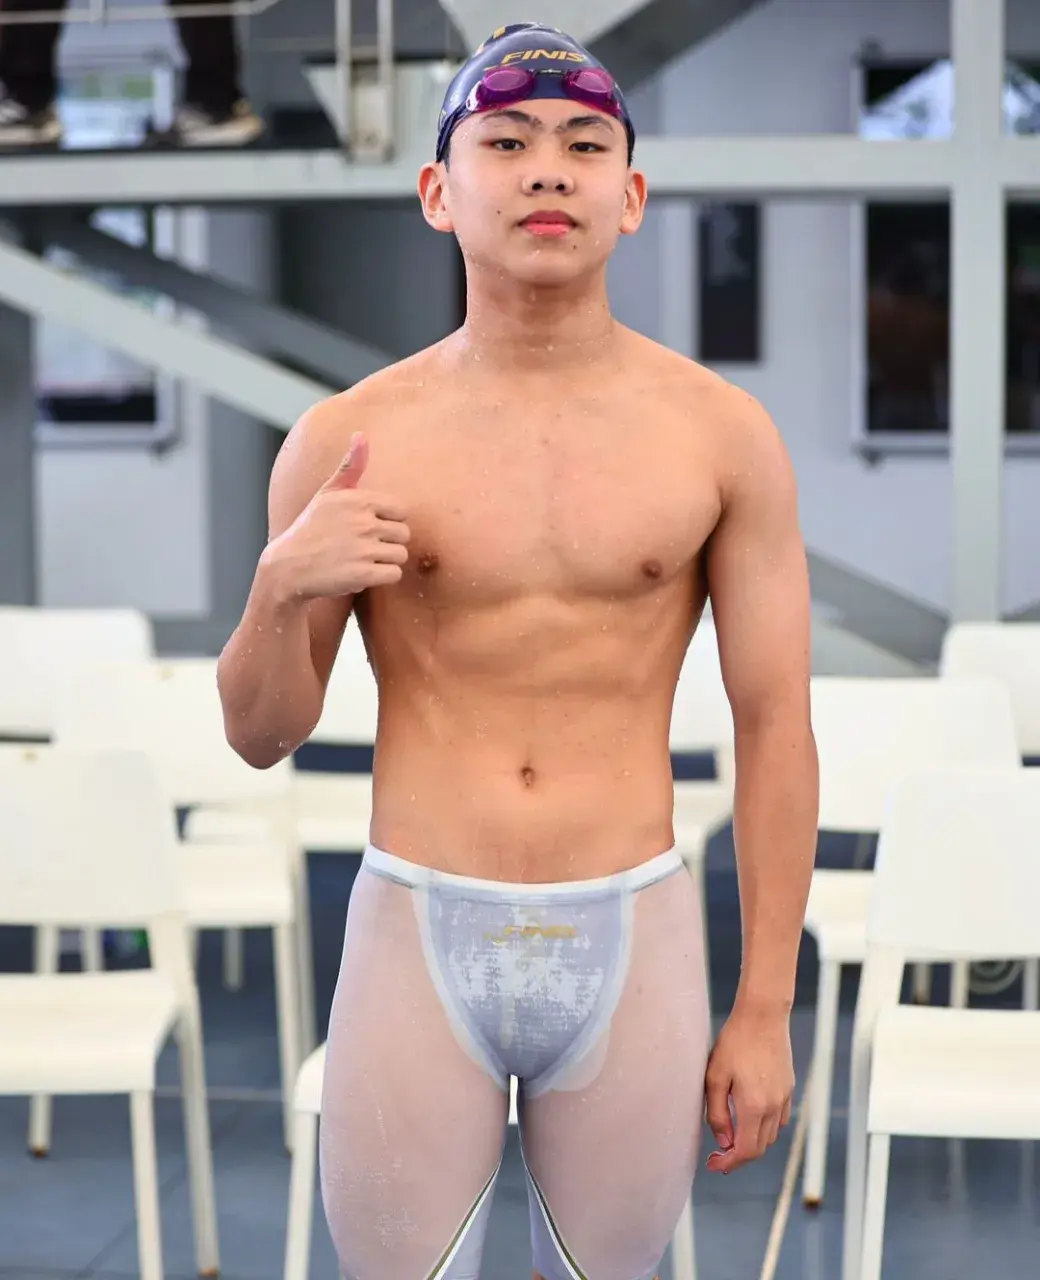 หนุ่มนักว่ายน้ำใสใส